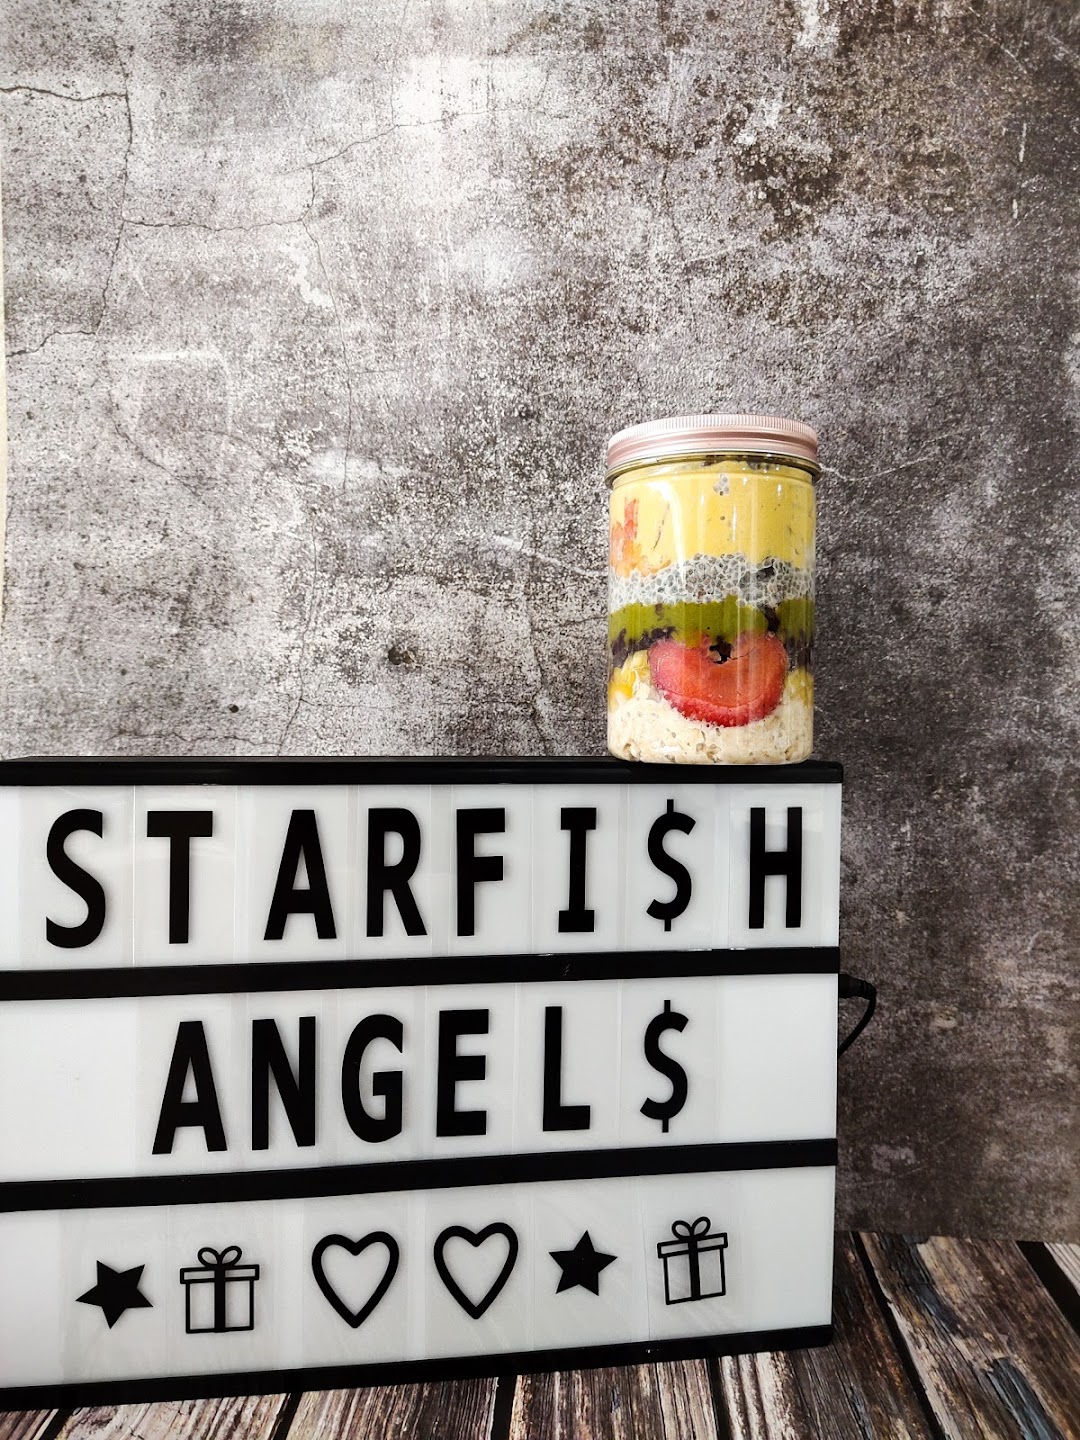  starfish angel